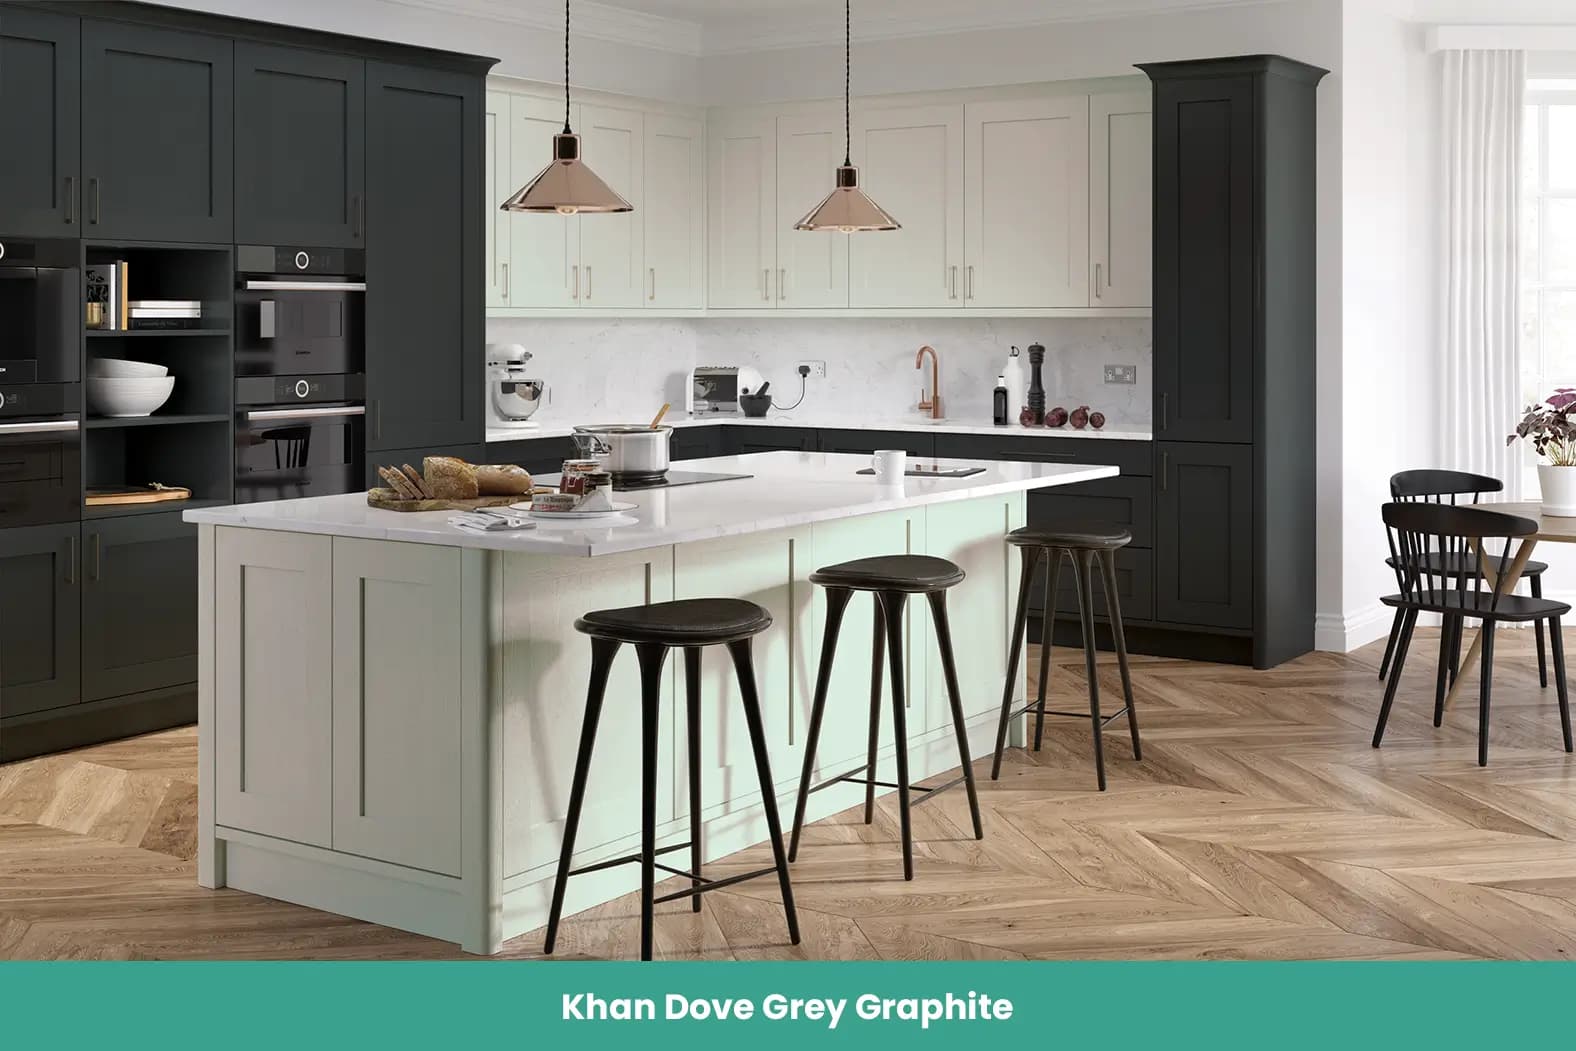 Khan Dove Grey Graphite Kitchen